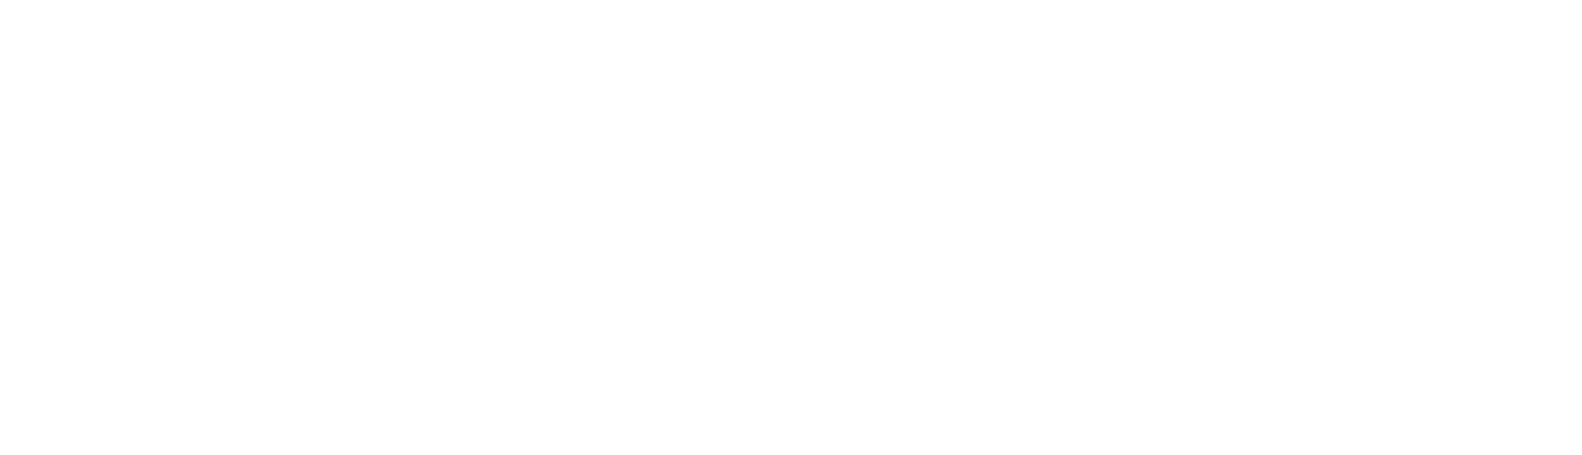 Shimizu Corporation logo large for dark backgrounds (transparent PNG)